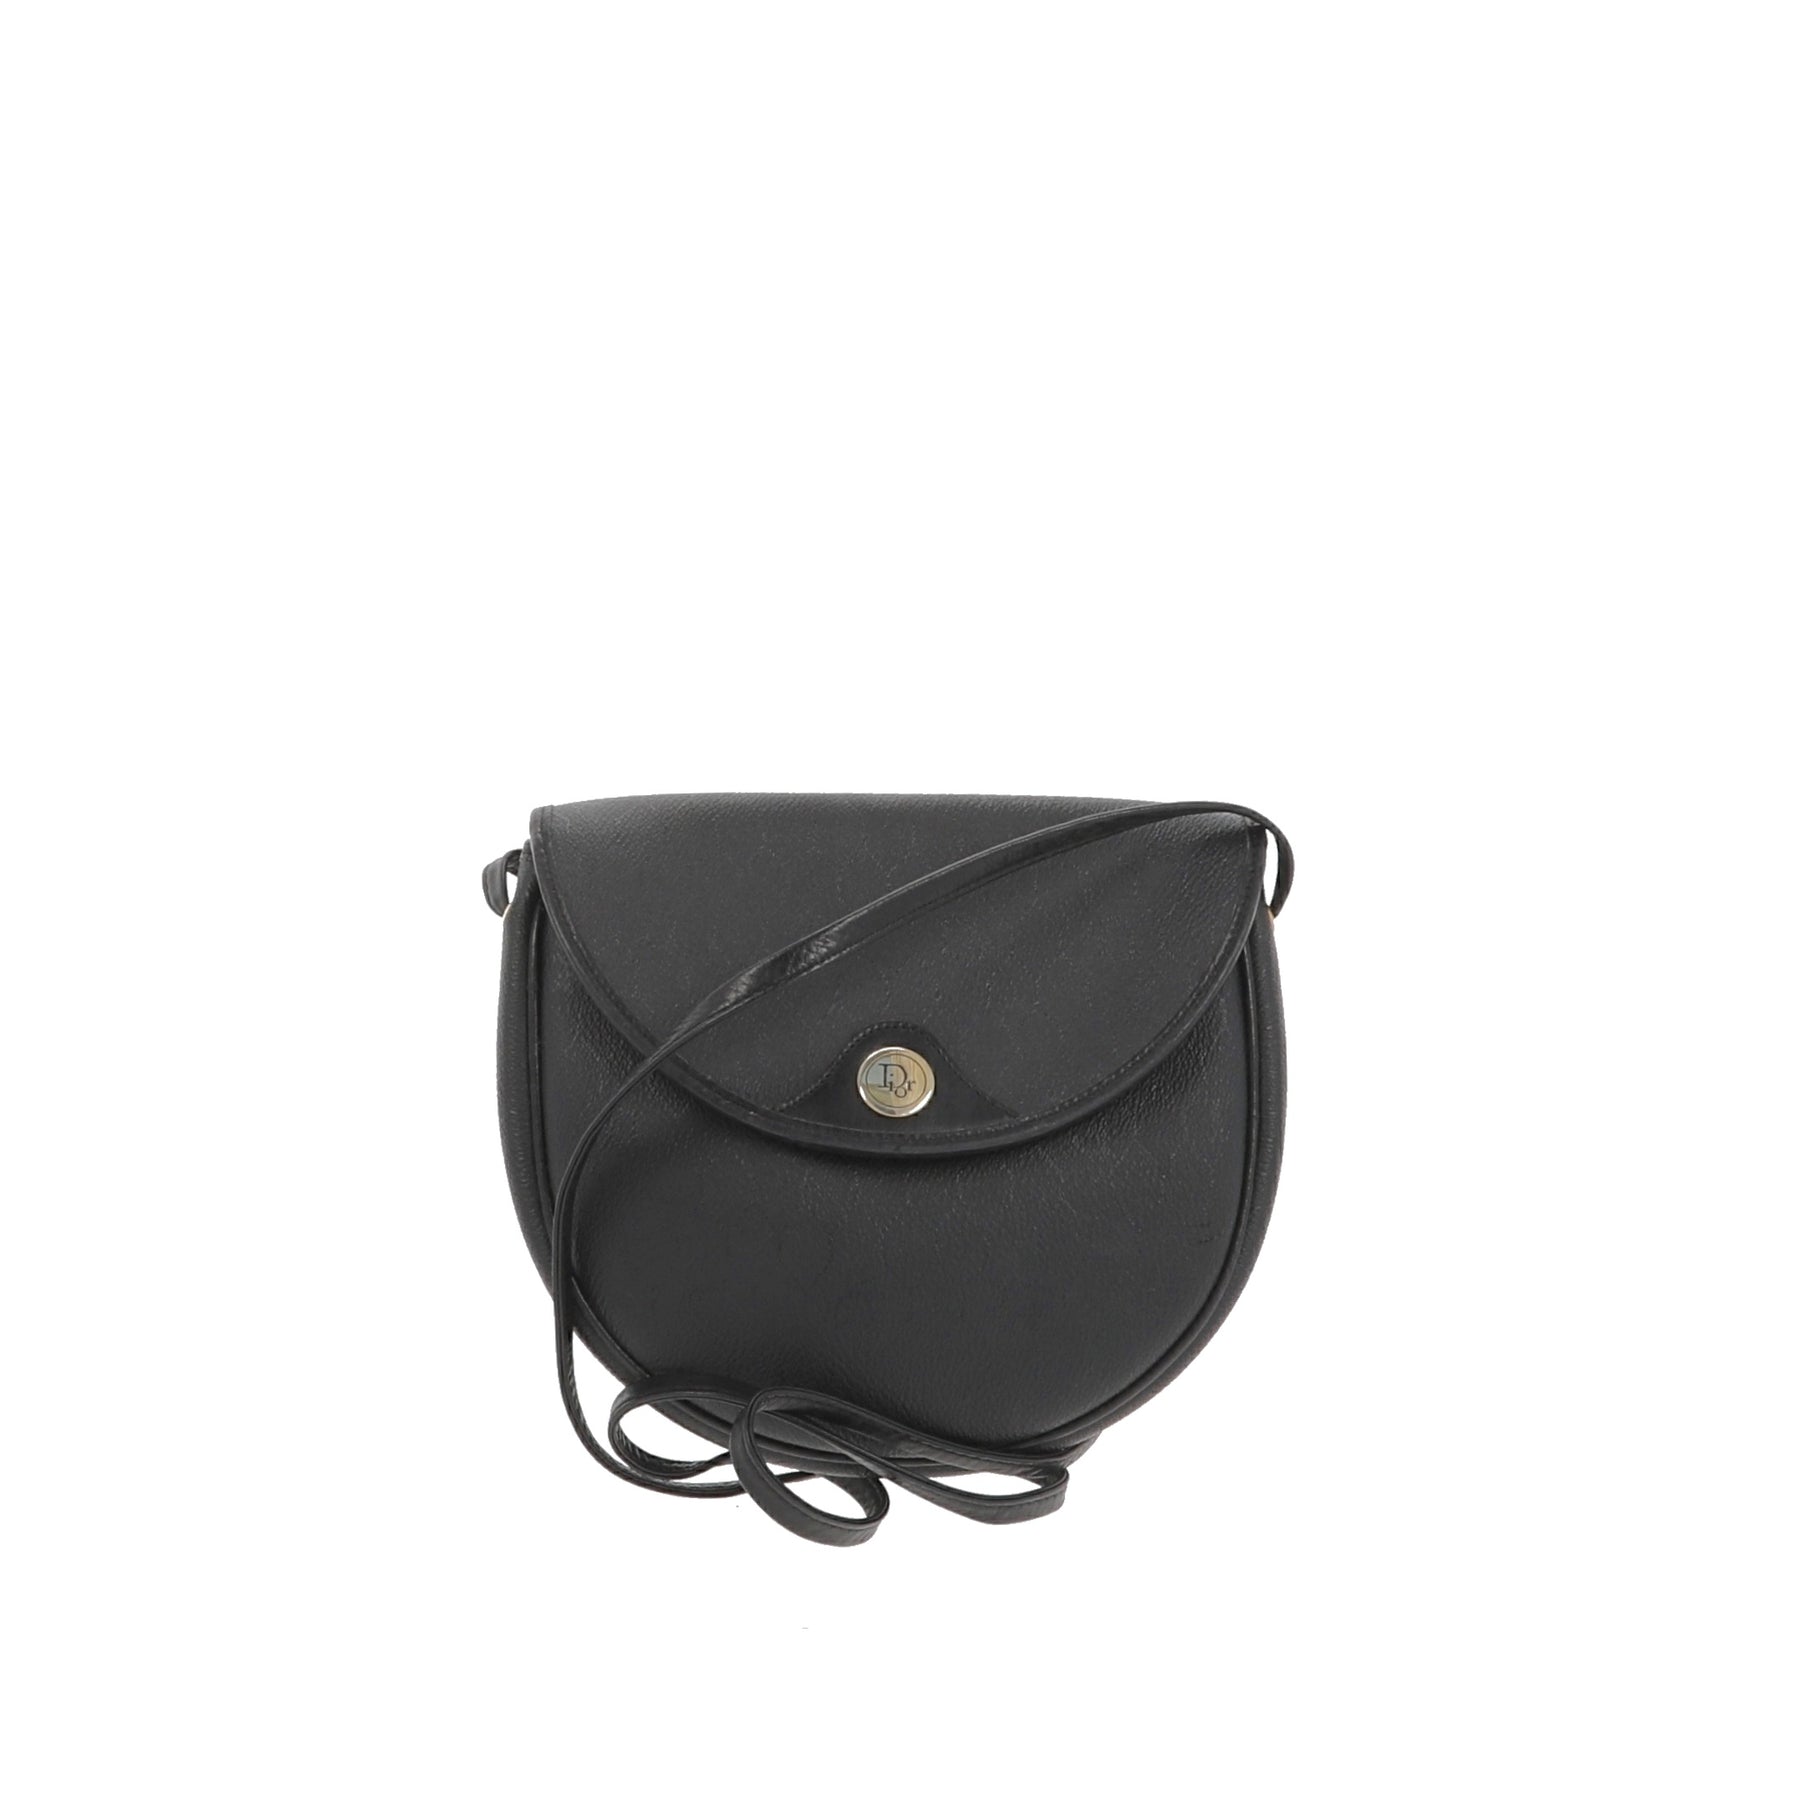 Christian Dior Crossbody Bag in Black Canvas – Fancy Lux